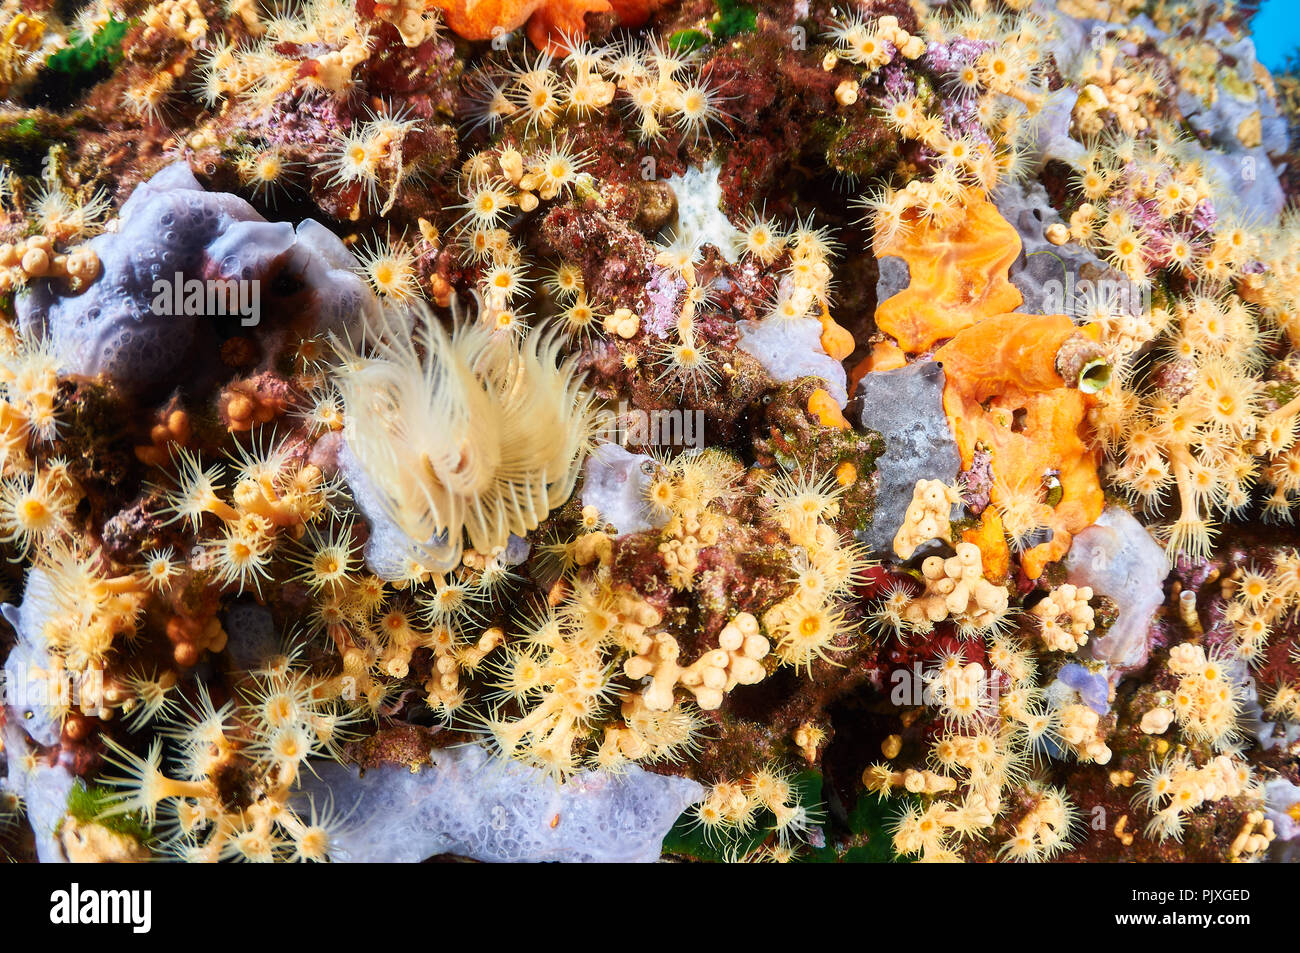 Gelber Cluster Anemone (Parazoanthus axinellae) Kolonie mit einer Vielzahl von Schwämmen und inkrustierende Marine Life (Formentera, Balearen, Spanien) Stockfoto